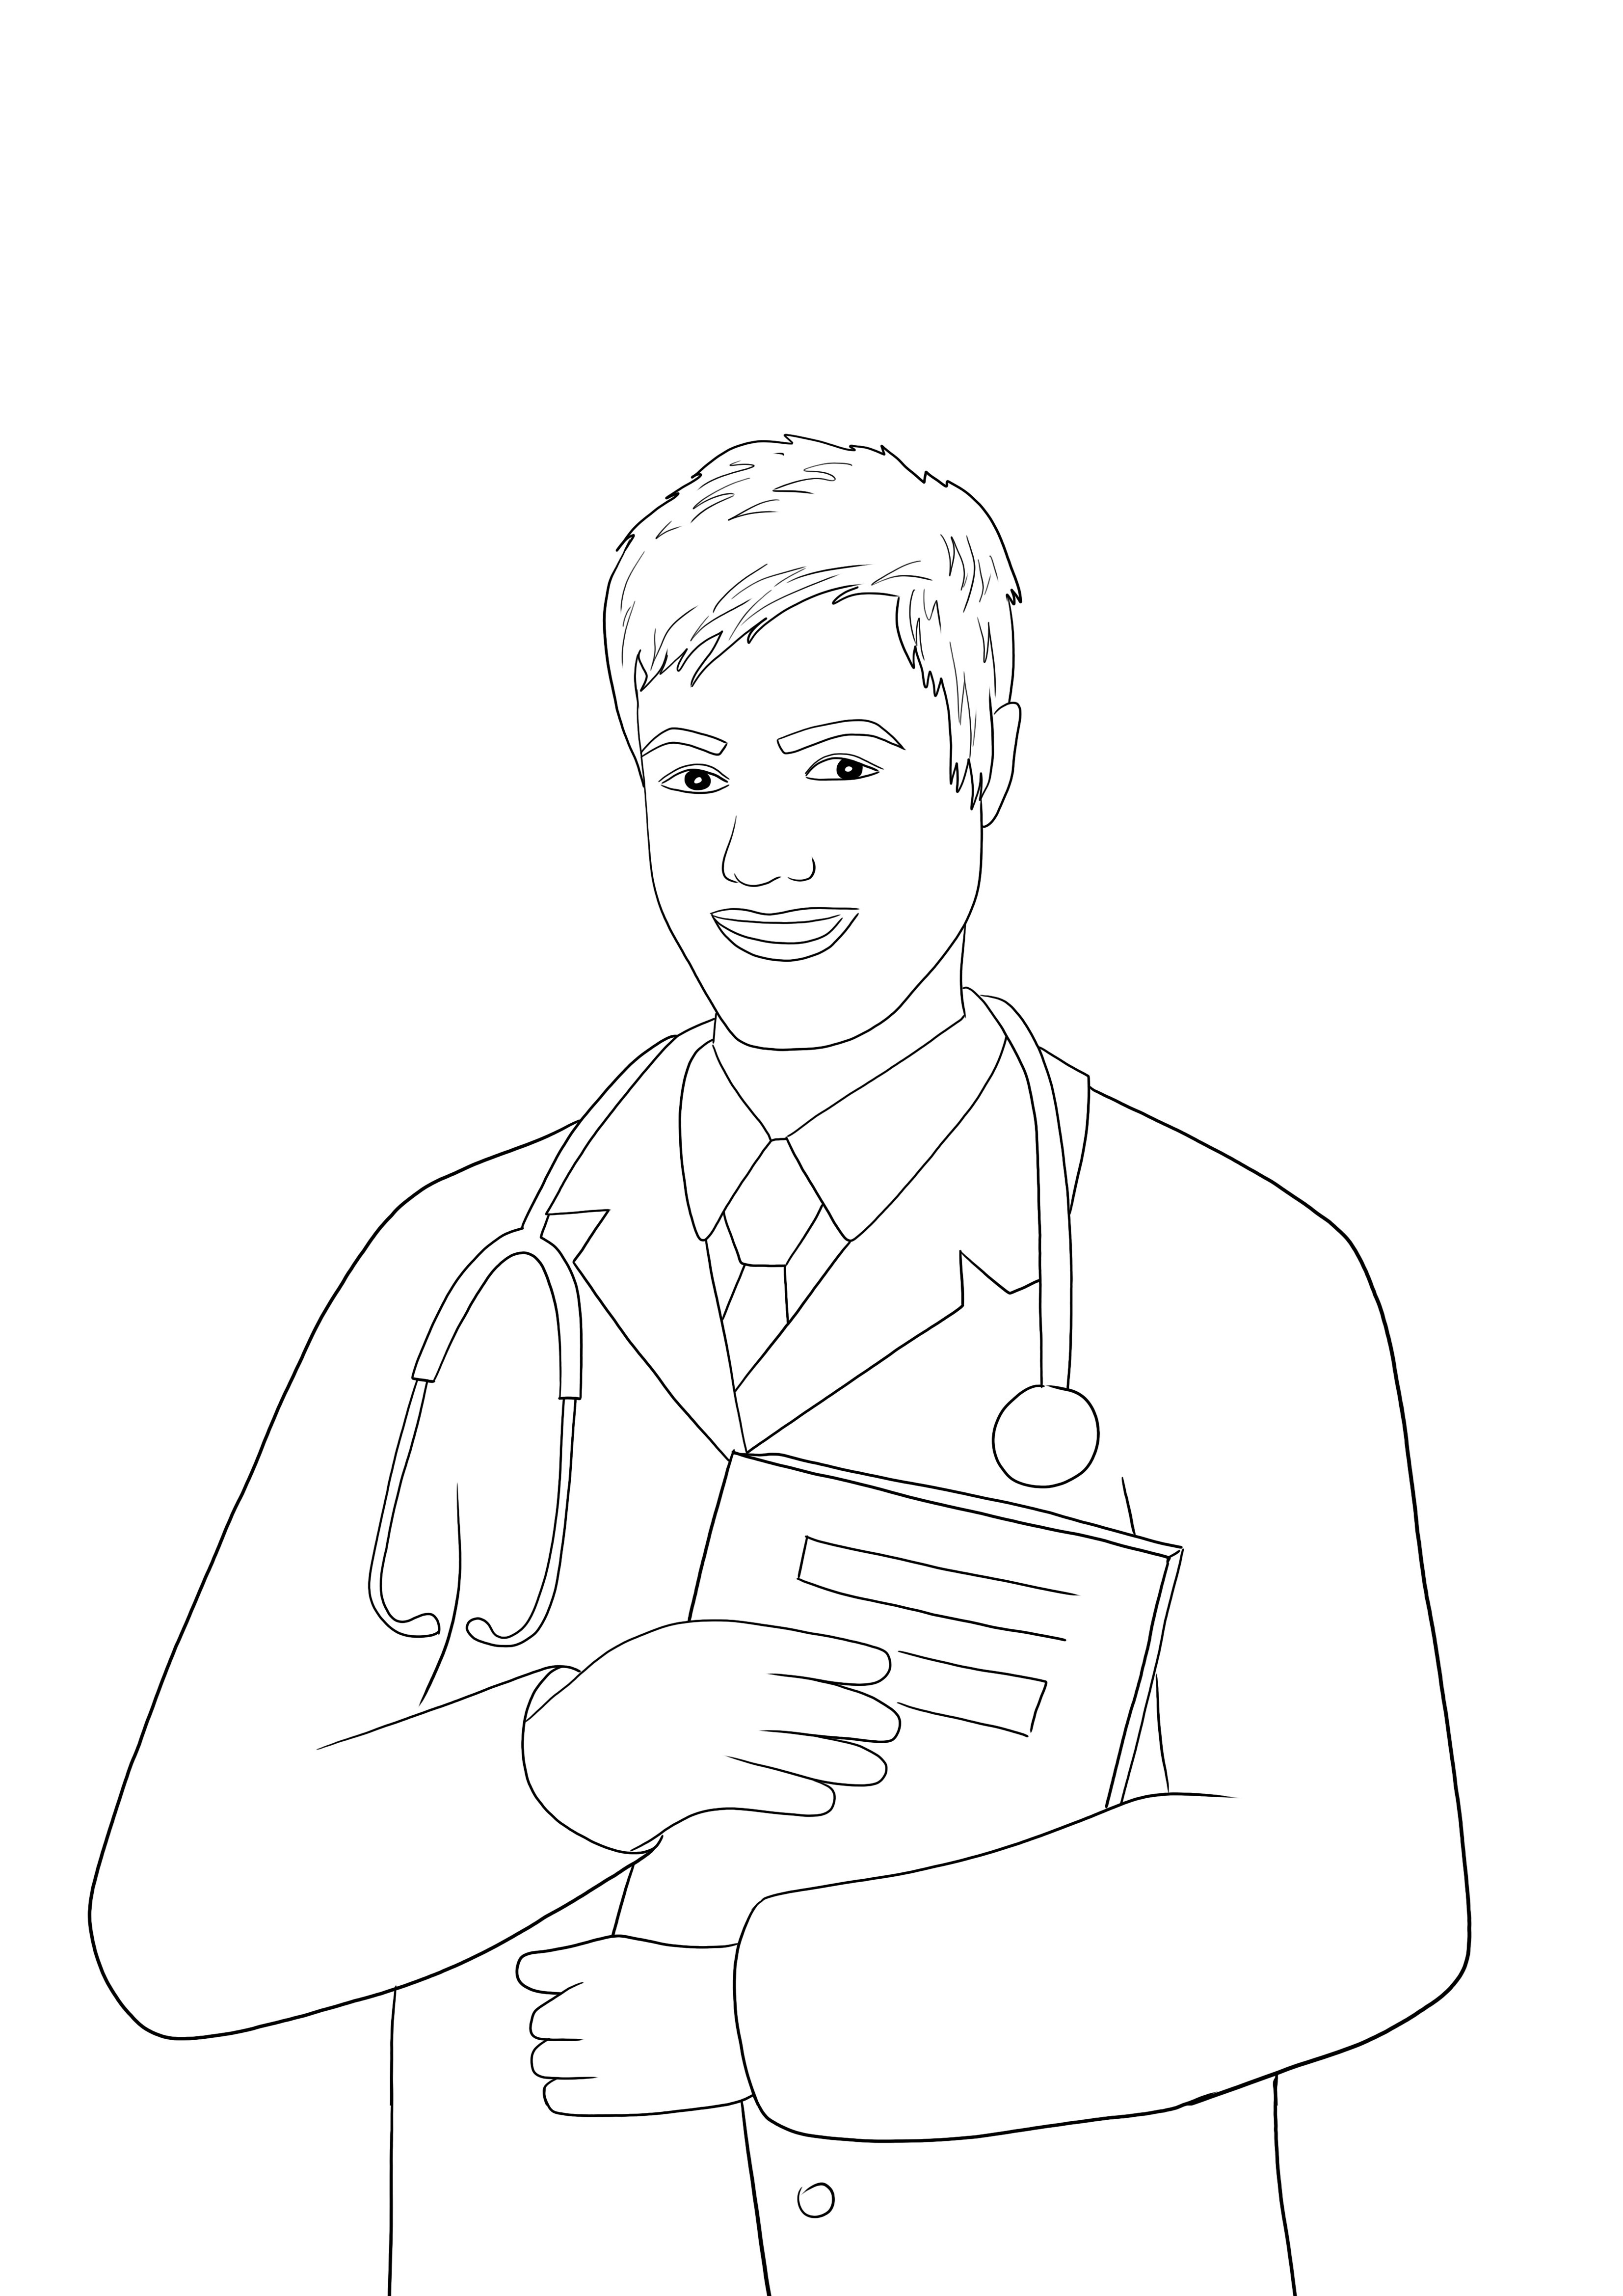 Meslekler hakkında öğretmek için bir Erkek Doktorun ücretsiz yazdırılabilir boyama resmi